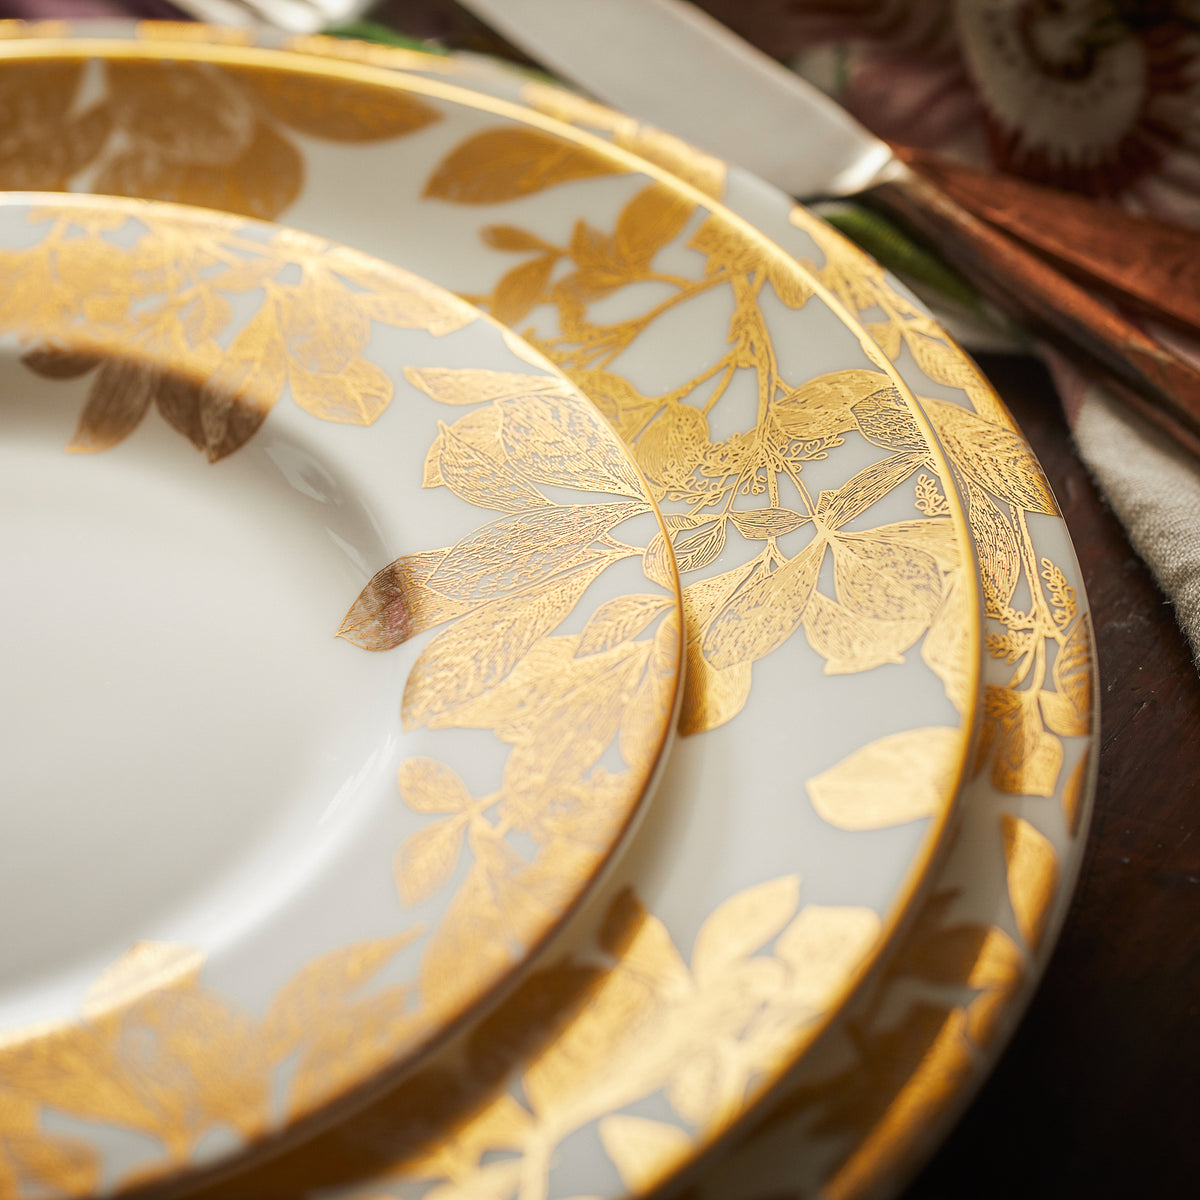 A set of Caskata Artisanal Home Arbor Rimmed Salad Plates Gold with dishwasher safe, gold leaf designs on them.